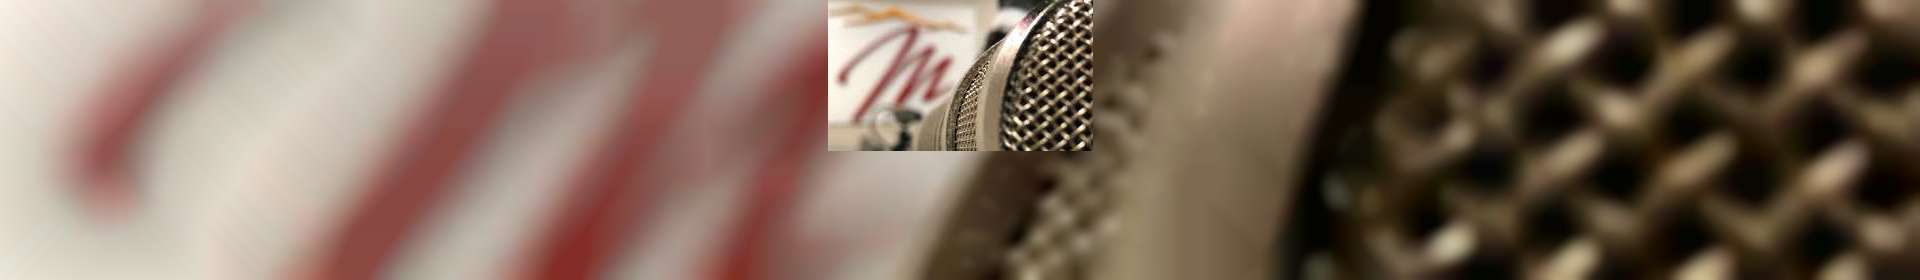 Entrevistas Rádio Maanaim - Quadro Luz para o Meu Caminho